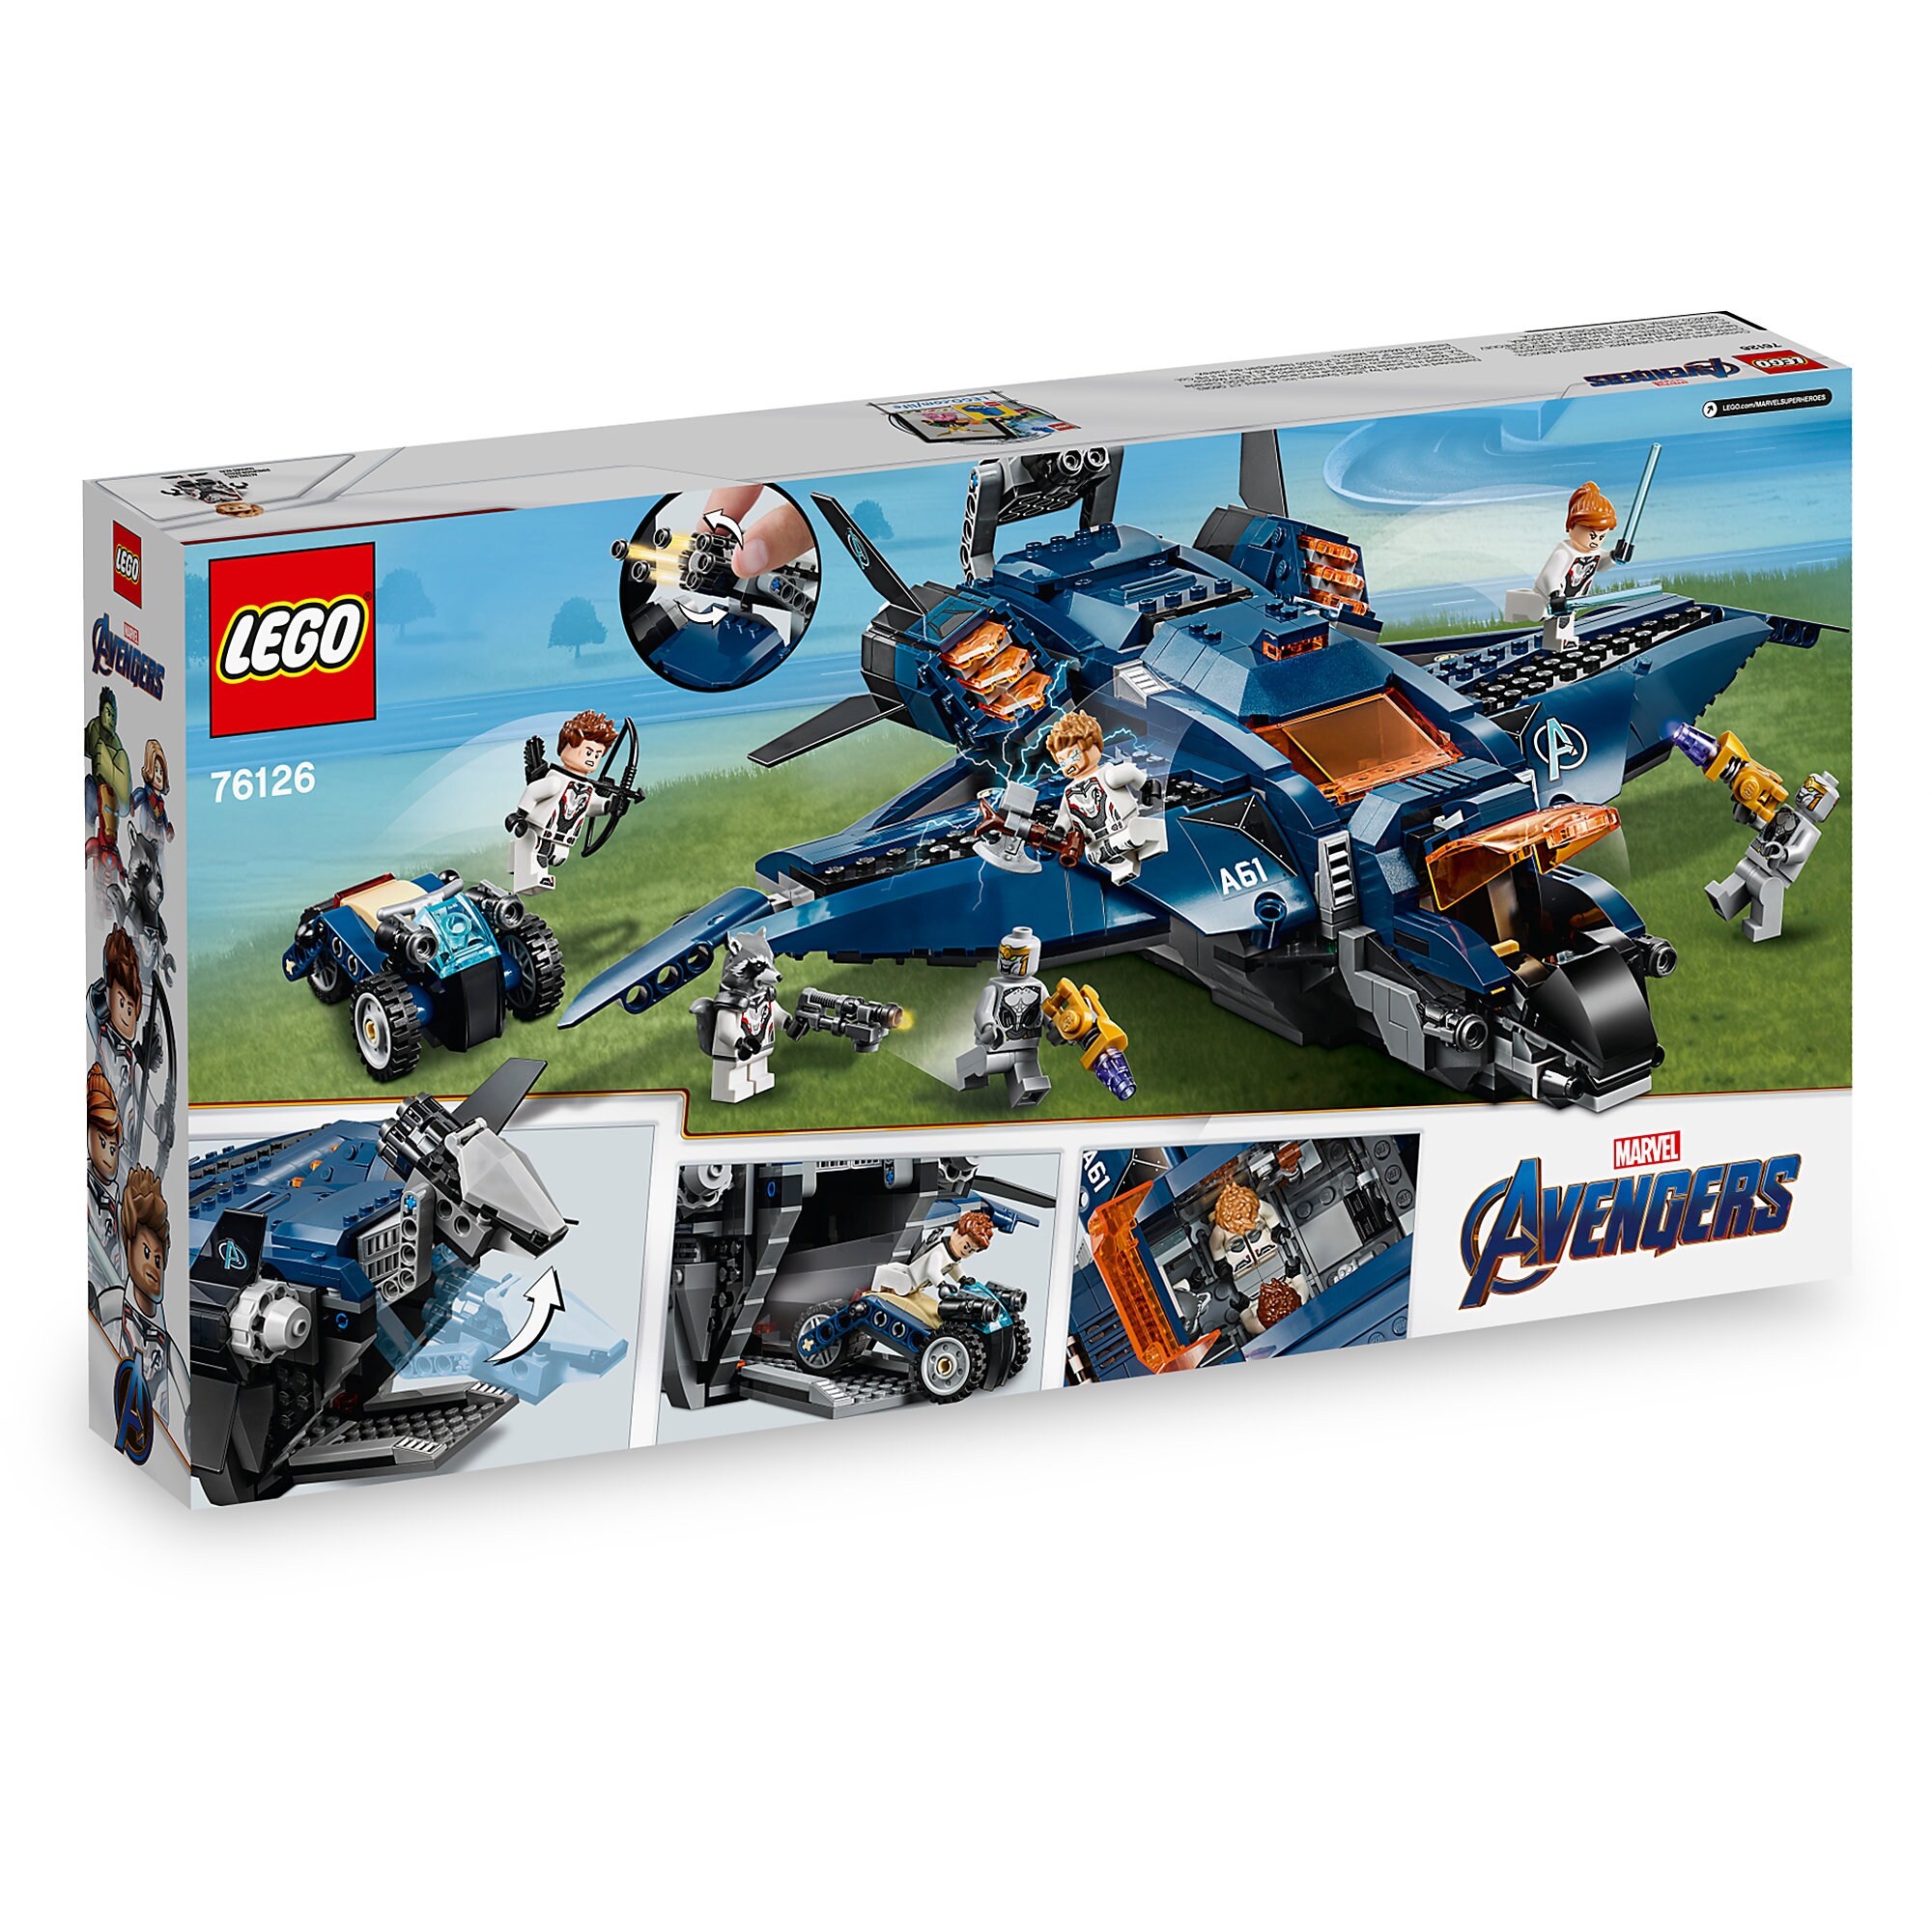 Marvel's Avengers Ultimate Quinjet Play Set by LEGO - Marvel's Avengers: Endgame